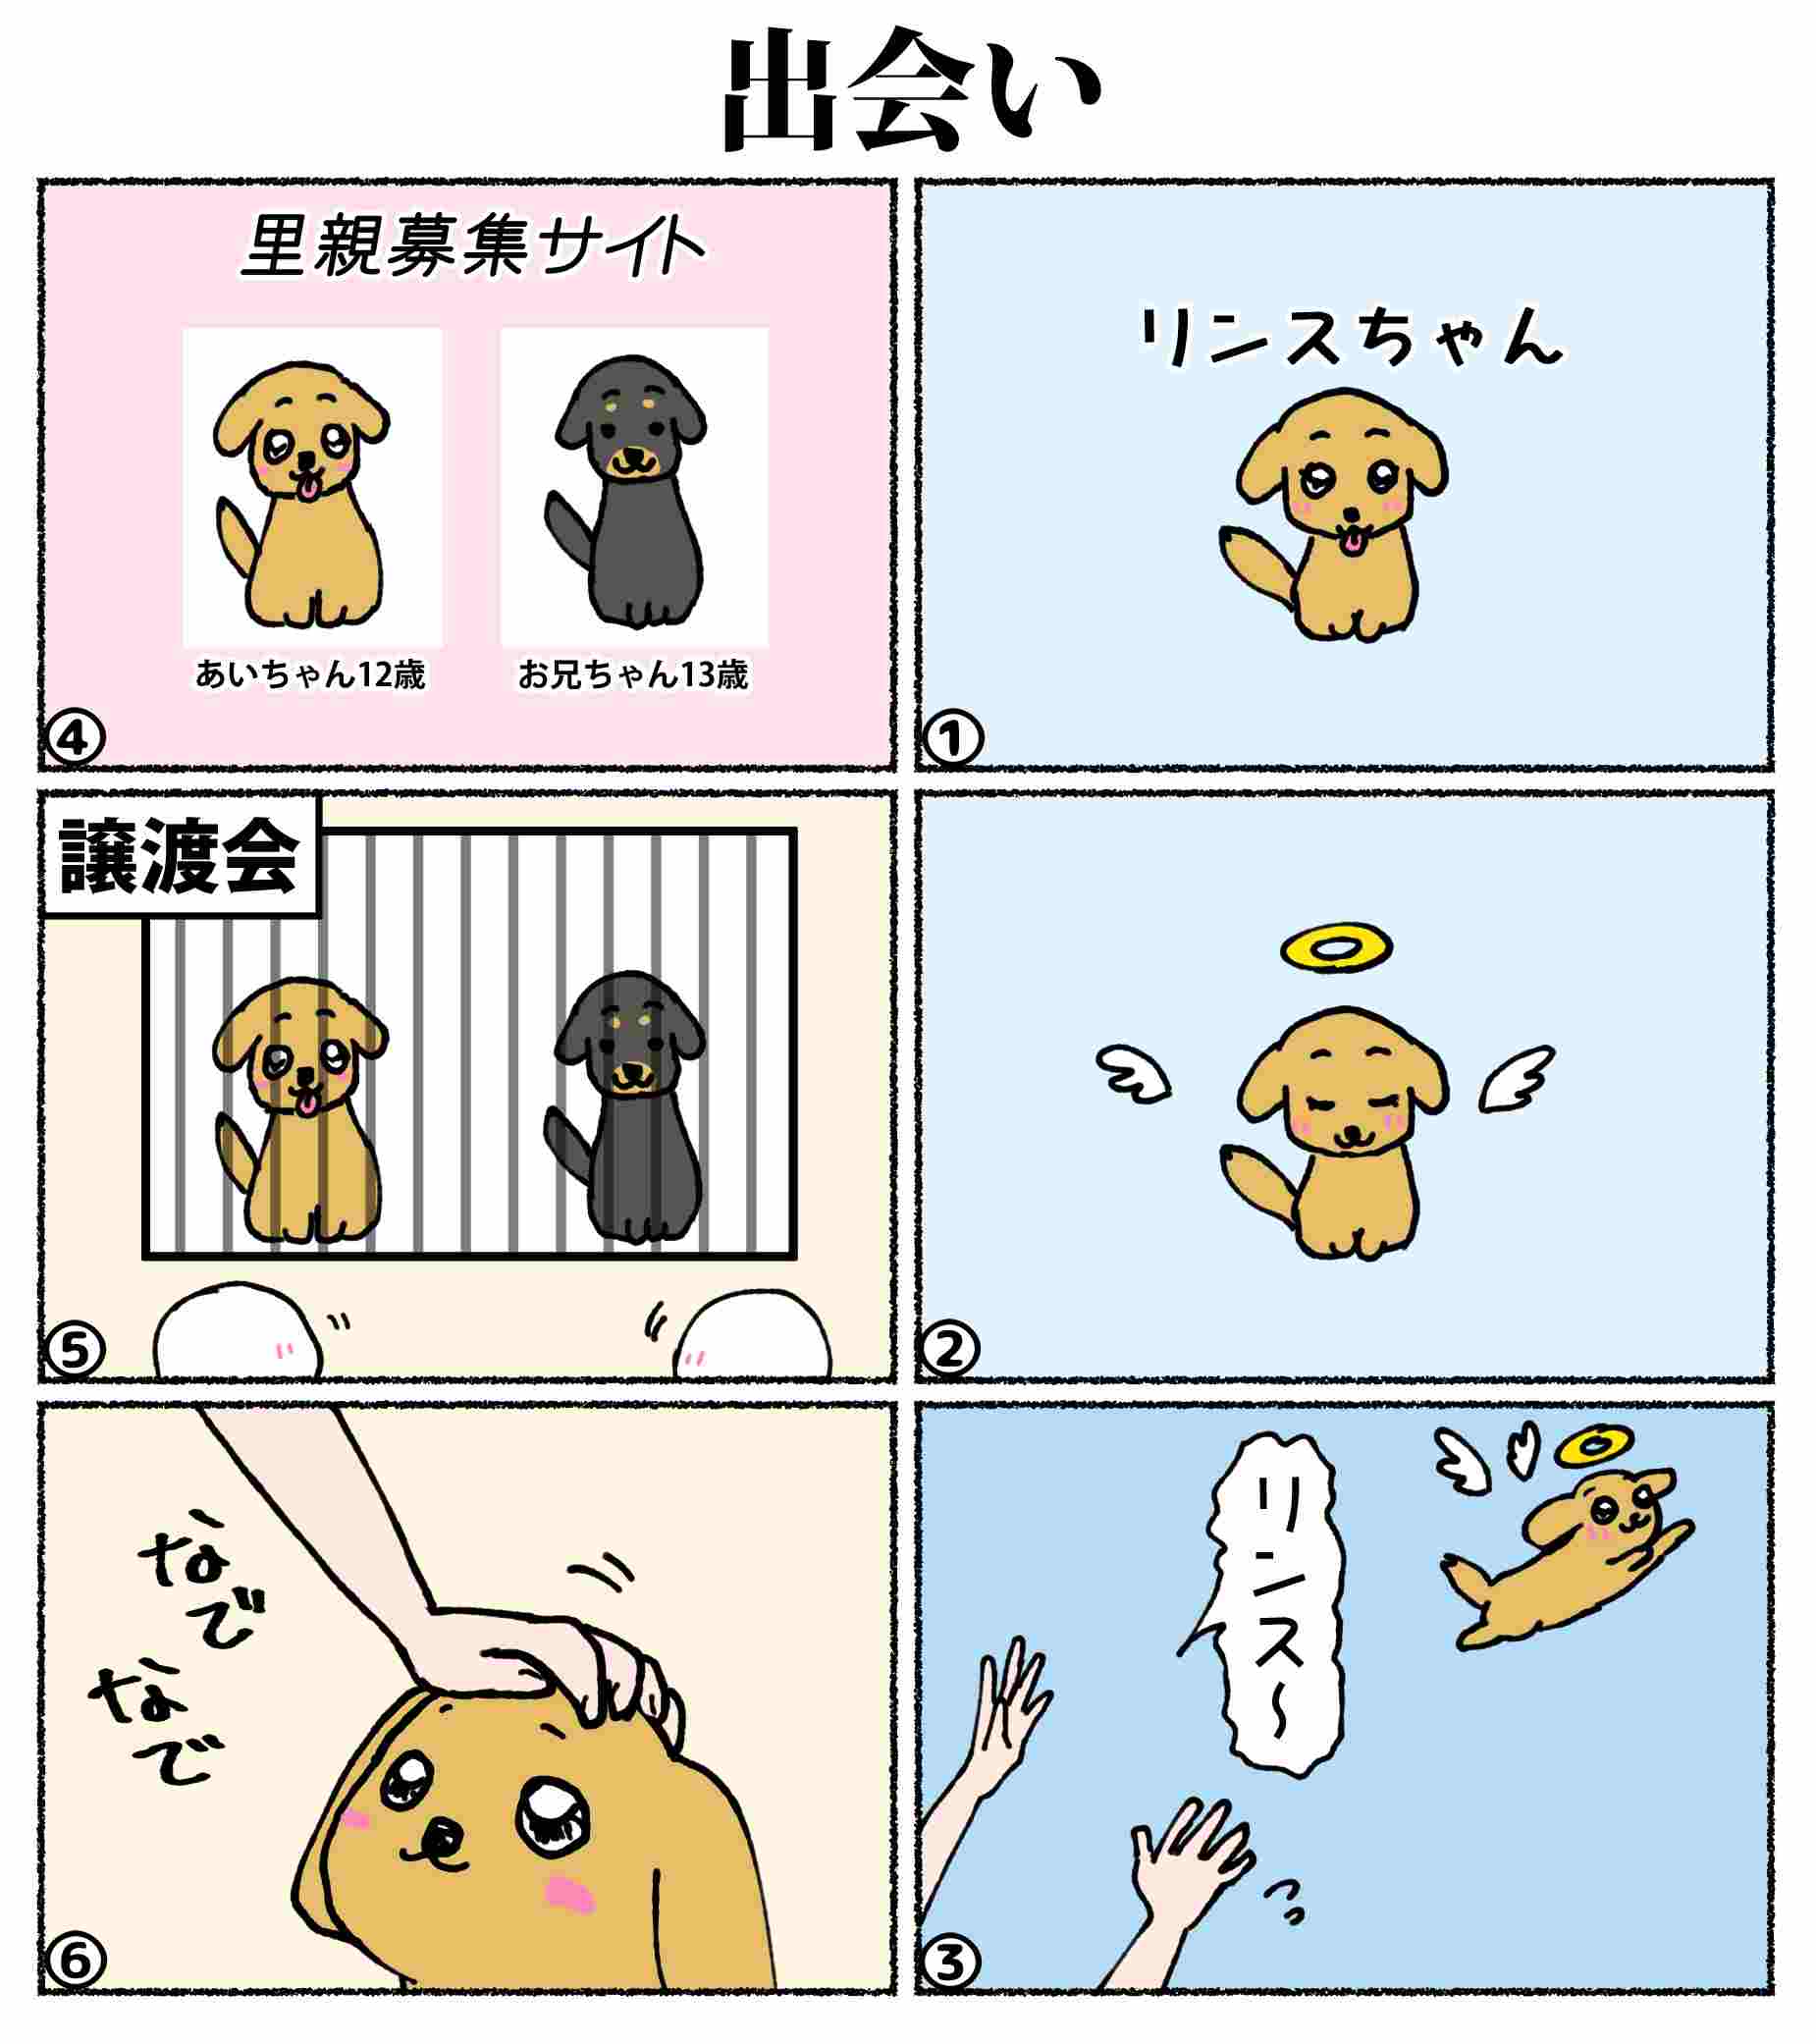 あいちゃん6コマ漫画1 出会い ときめき カウントダウン